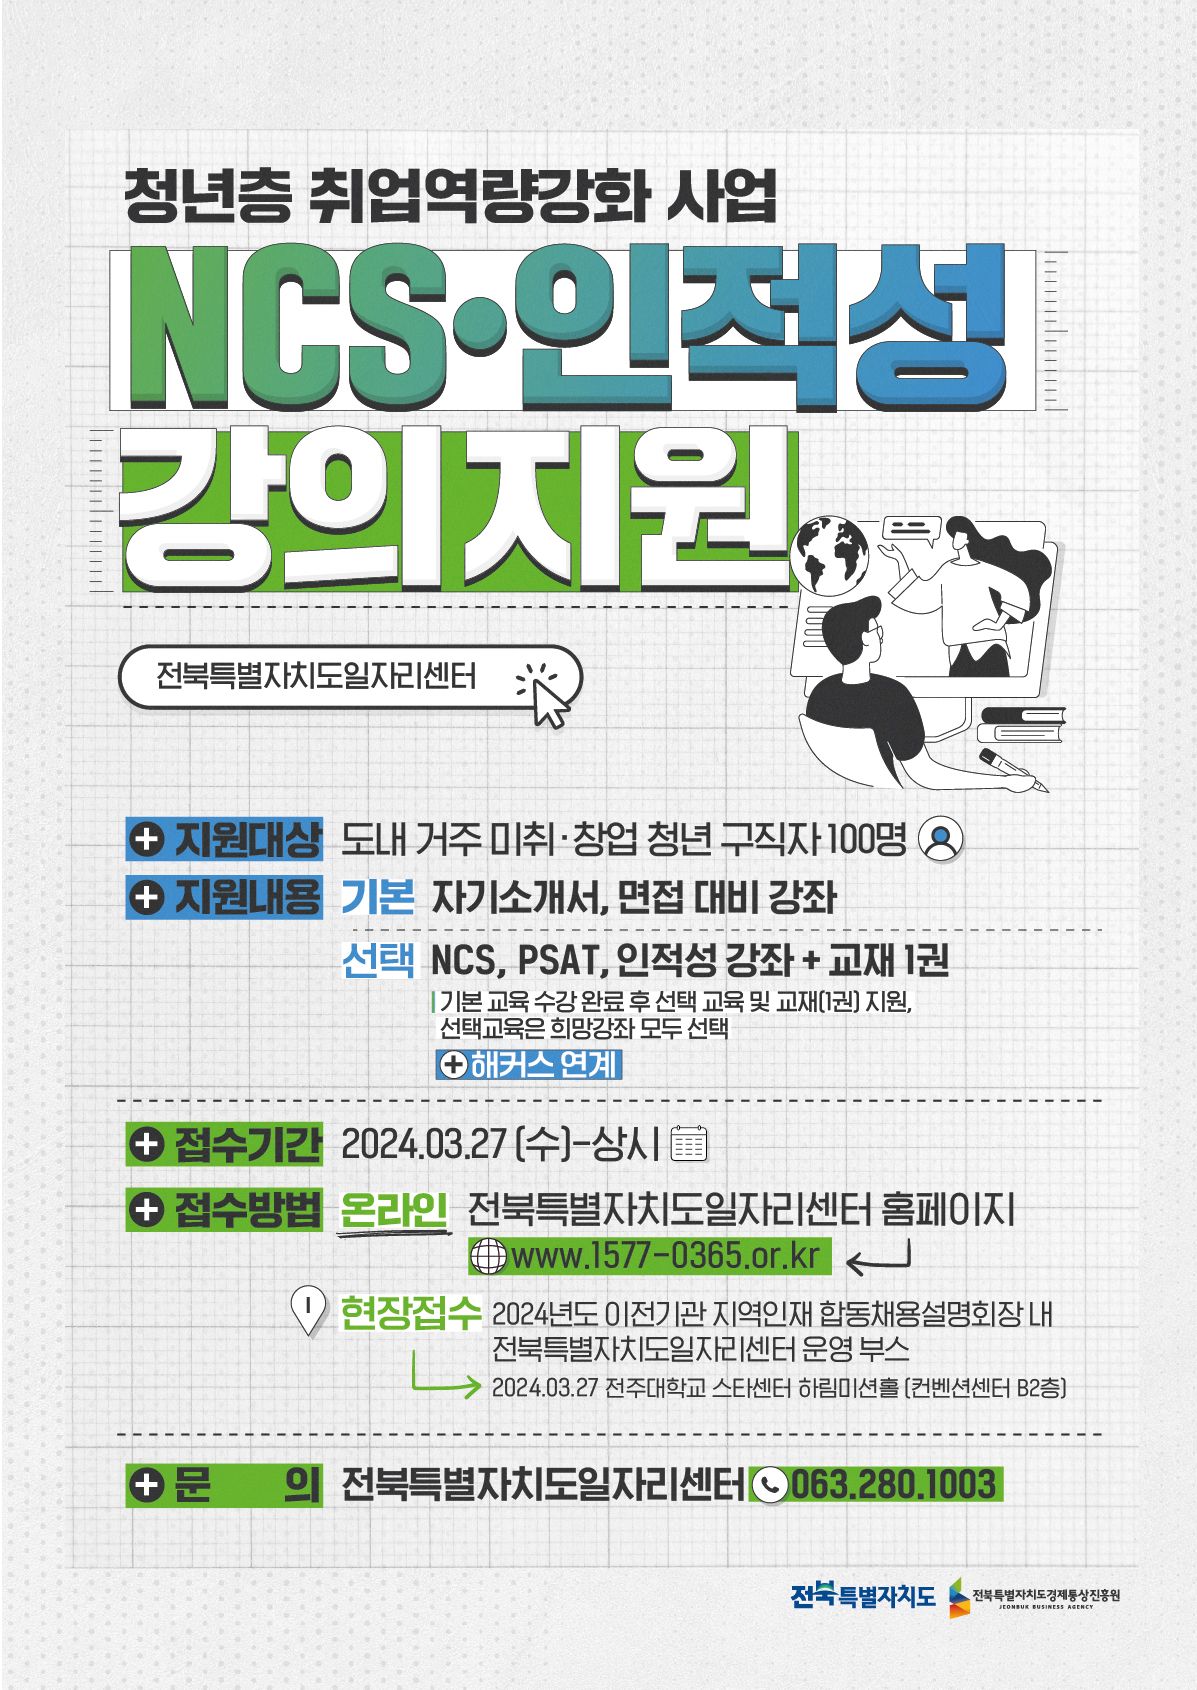 ‘2024년 청년층 NCSㆍ인적성 강의 지원사업’
참여자 모집